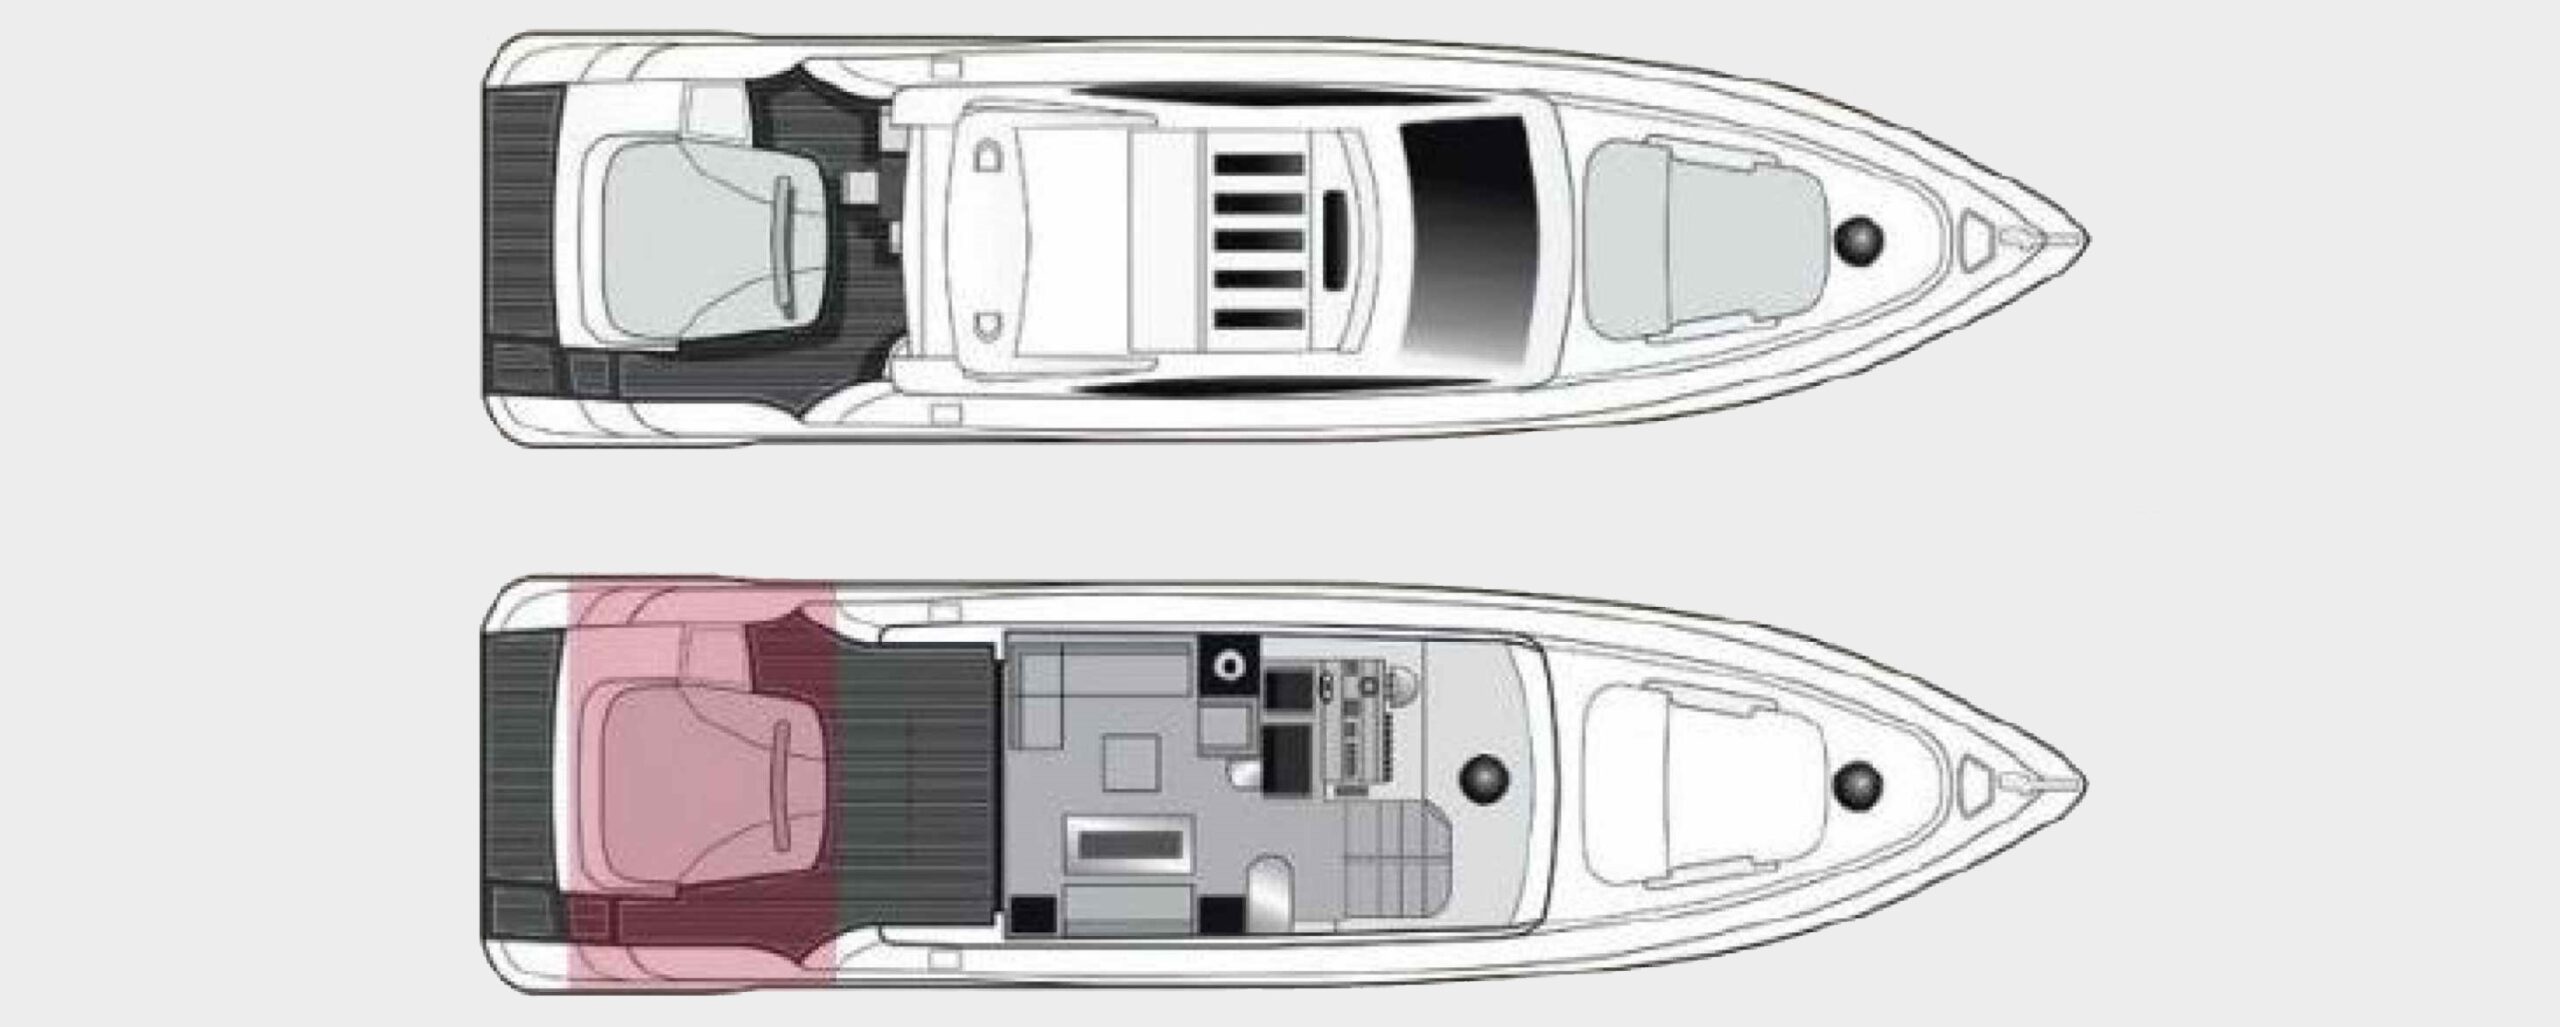 maoro yacht charter layout